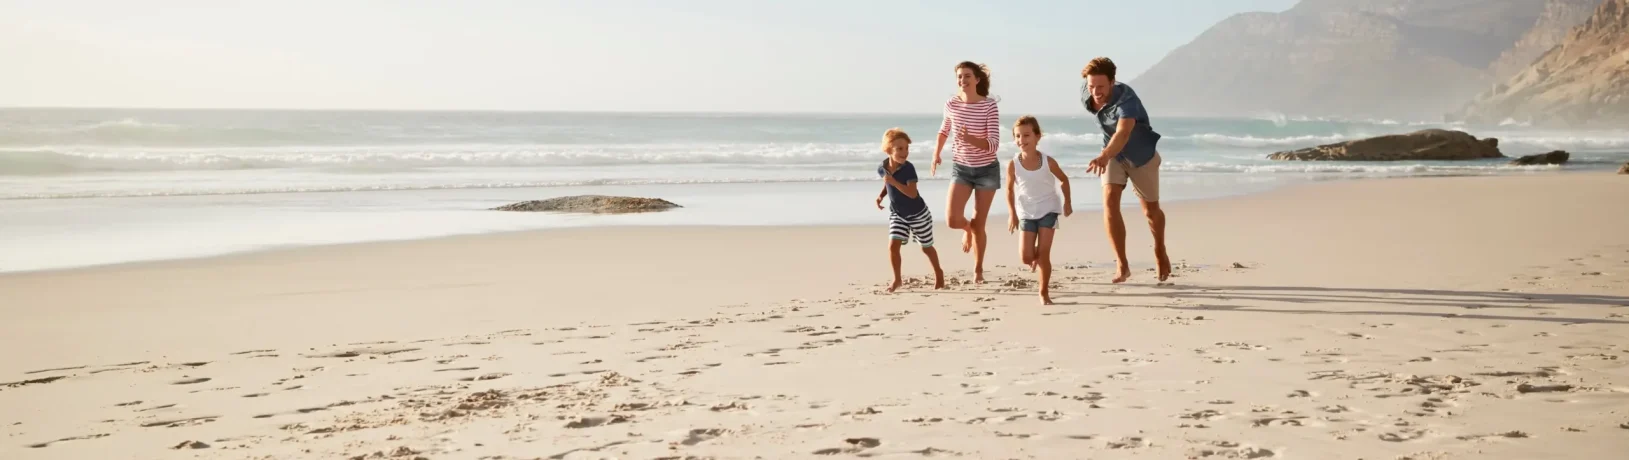 Familie am Strand: Eine gut ausgestattete Reiseapotheke sollte im Urlaub nie fehlen